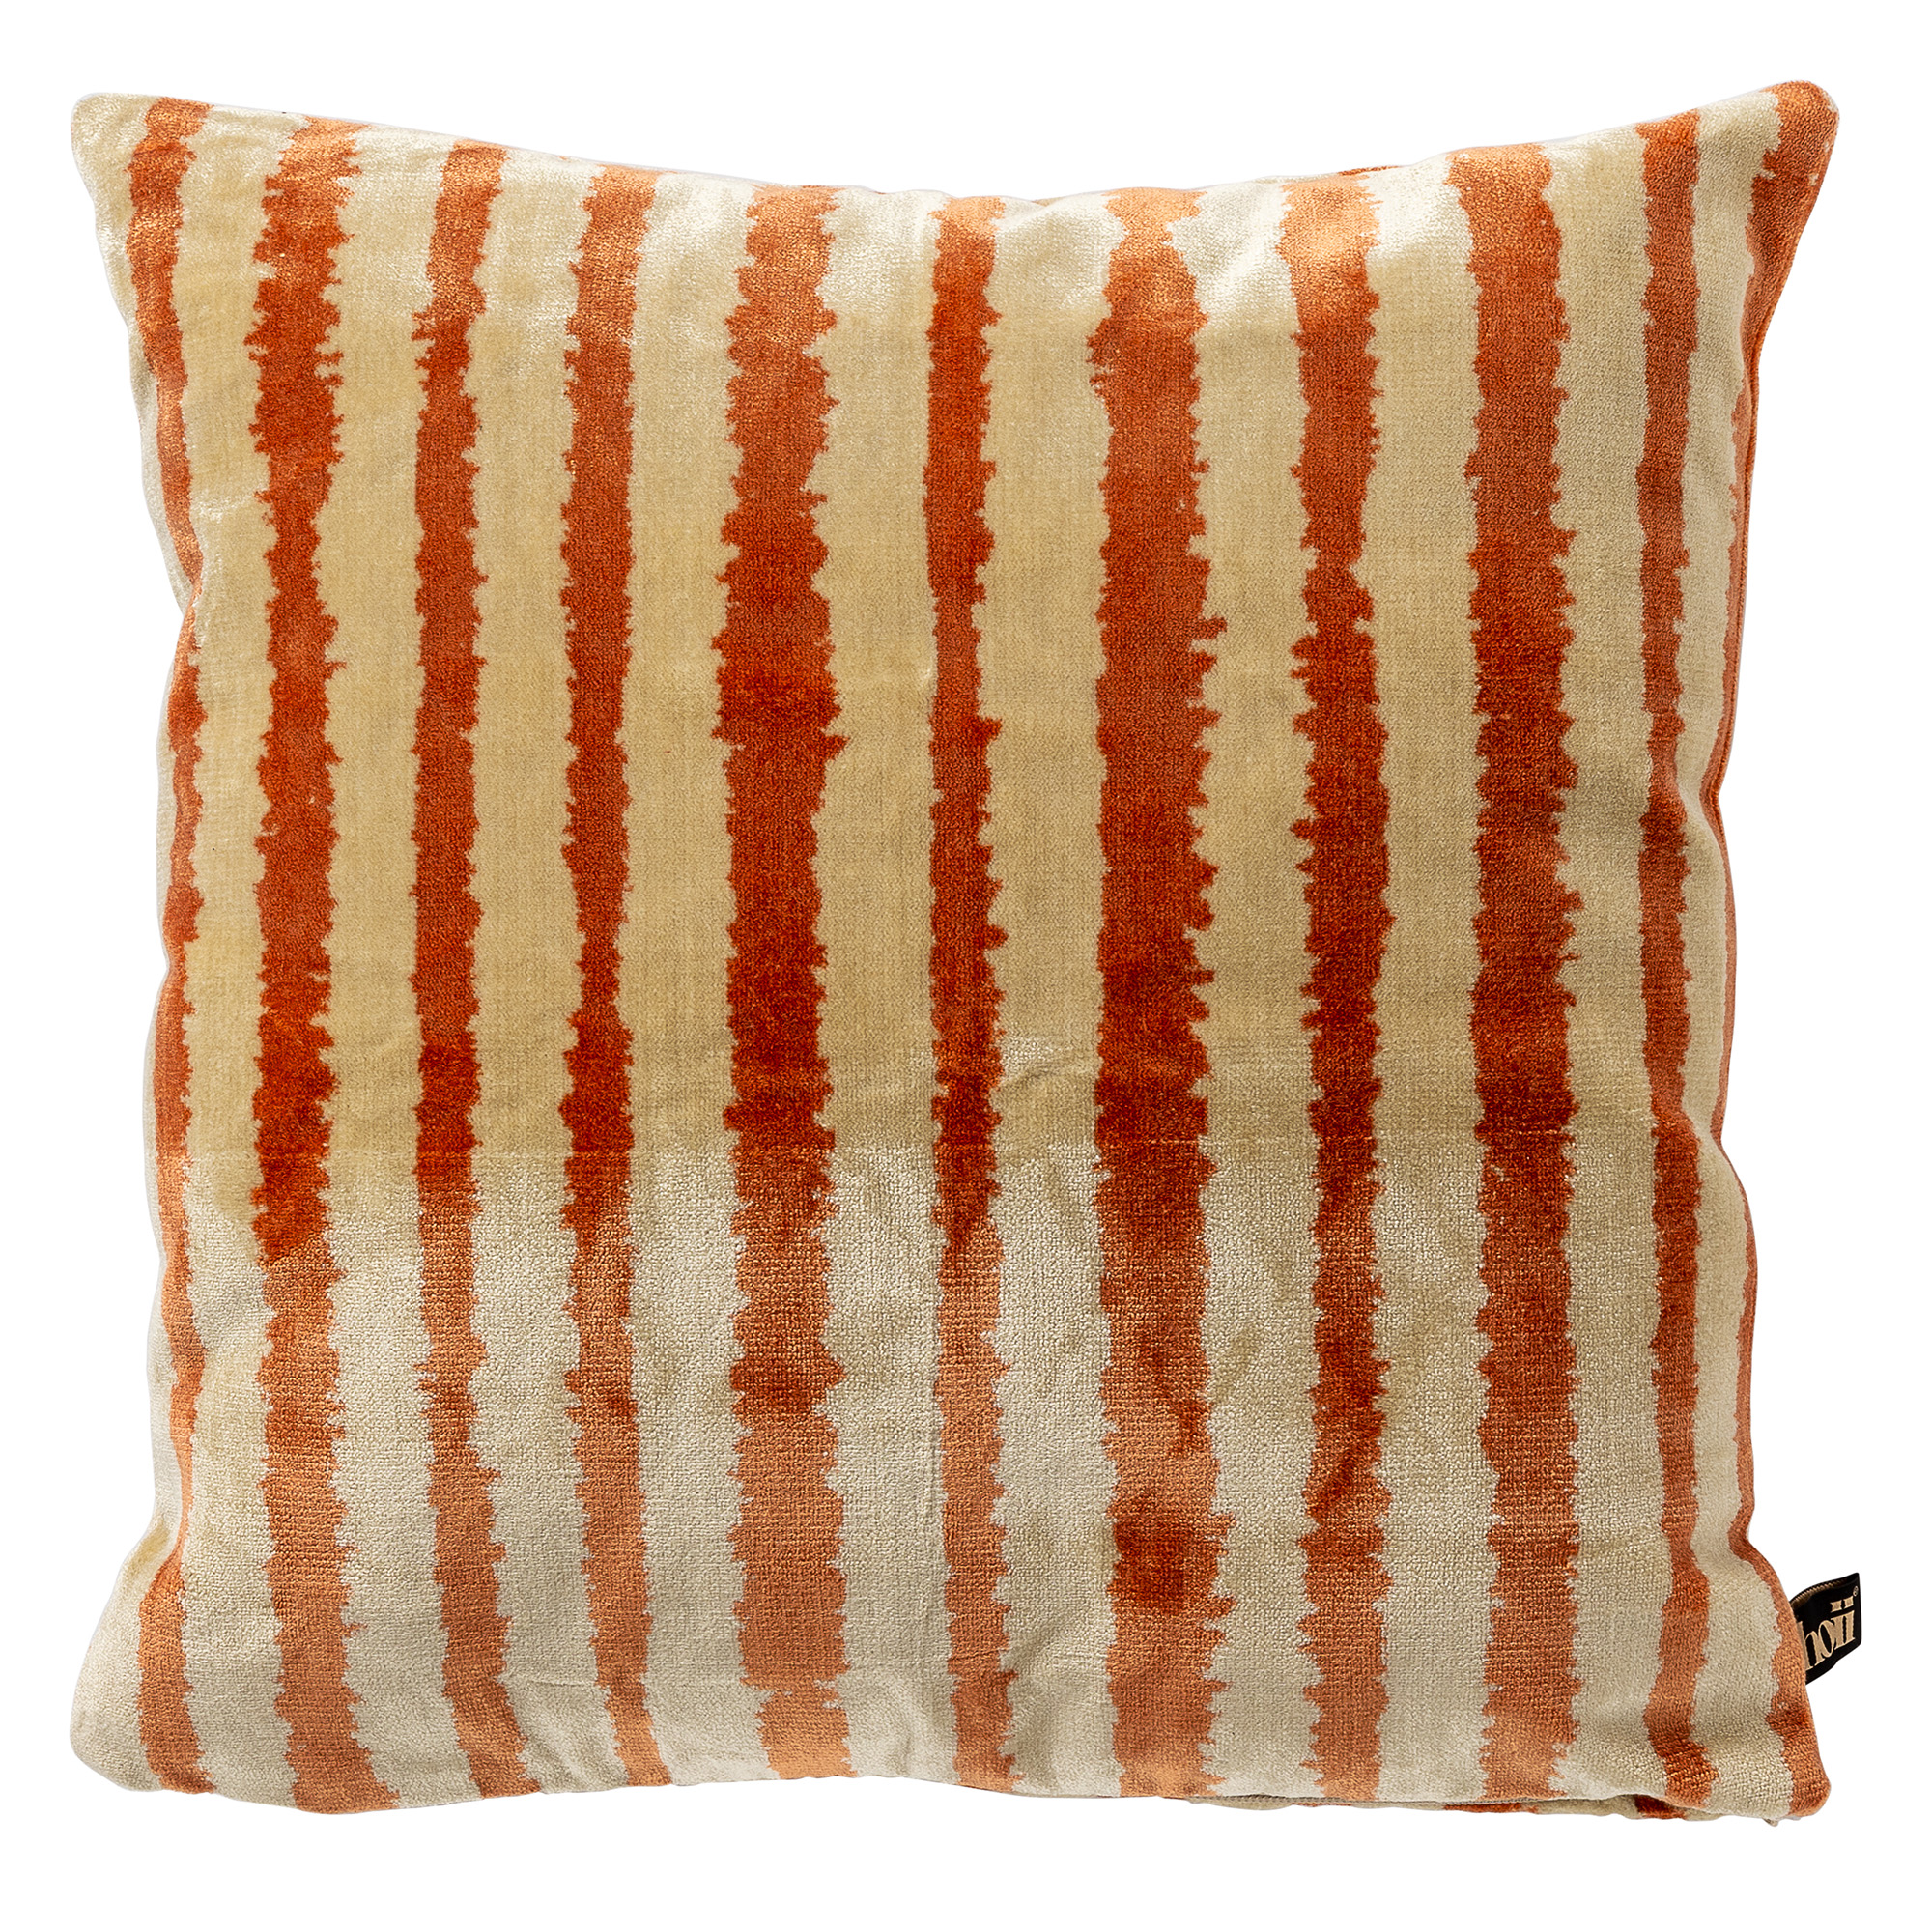 LORENZO | Cushion |45x45 cm Potters Clay | Orange | Velvet | Hoii |With luxury inner cushion